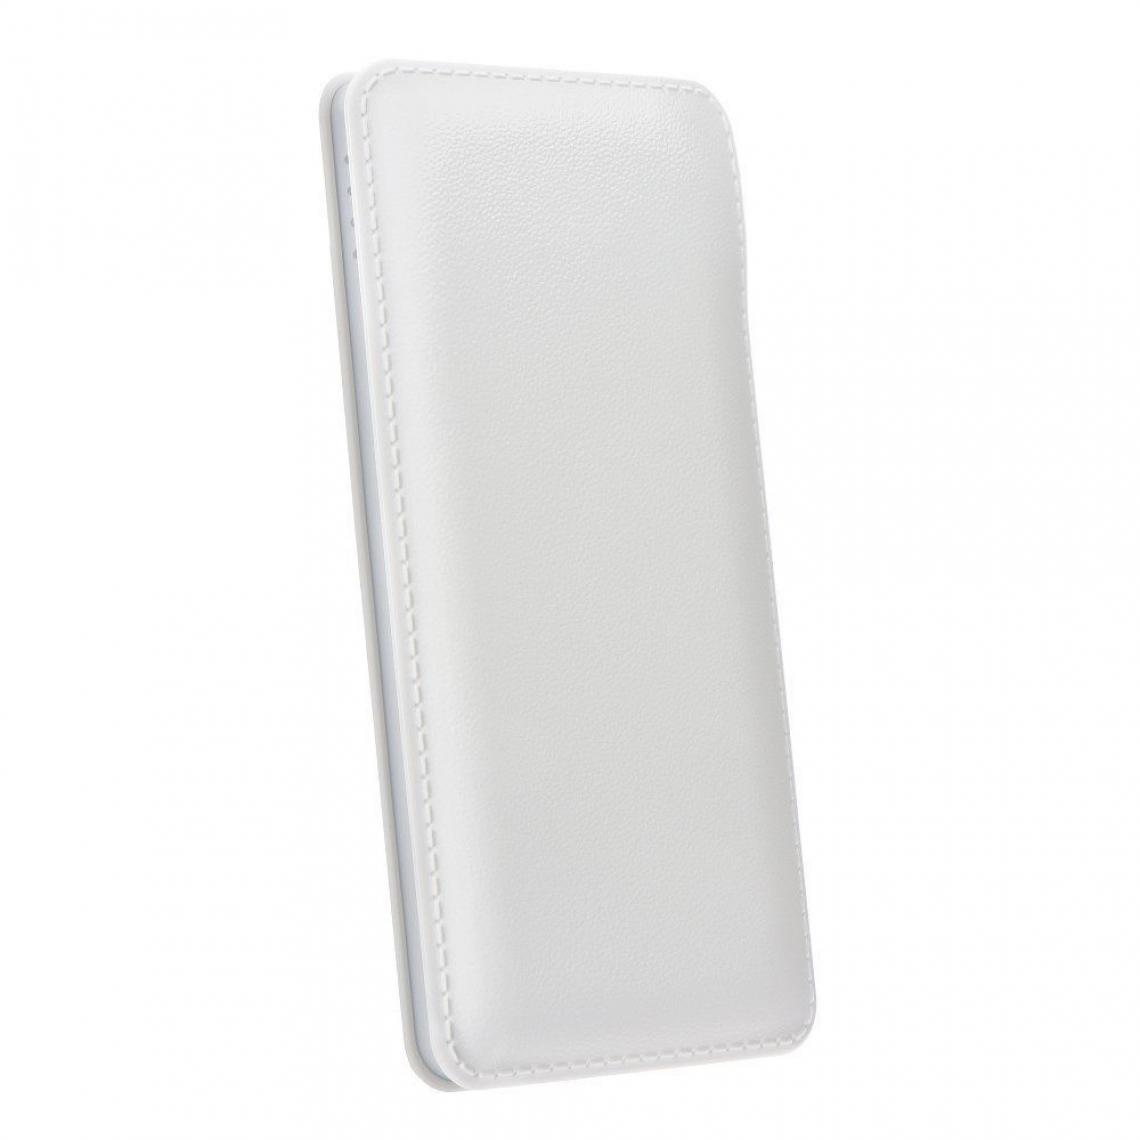 Ozzzo - Chargeur batterie externe 30000 mAh powerbank ozzzo blanc pour Apple iPhone SE 2020 - Autres accessoires smartphone